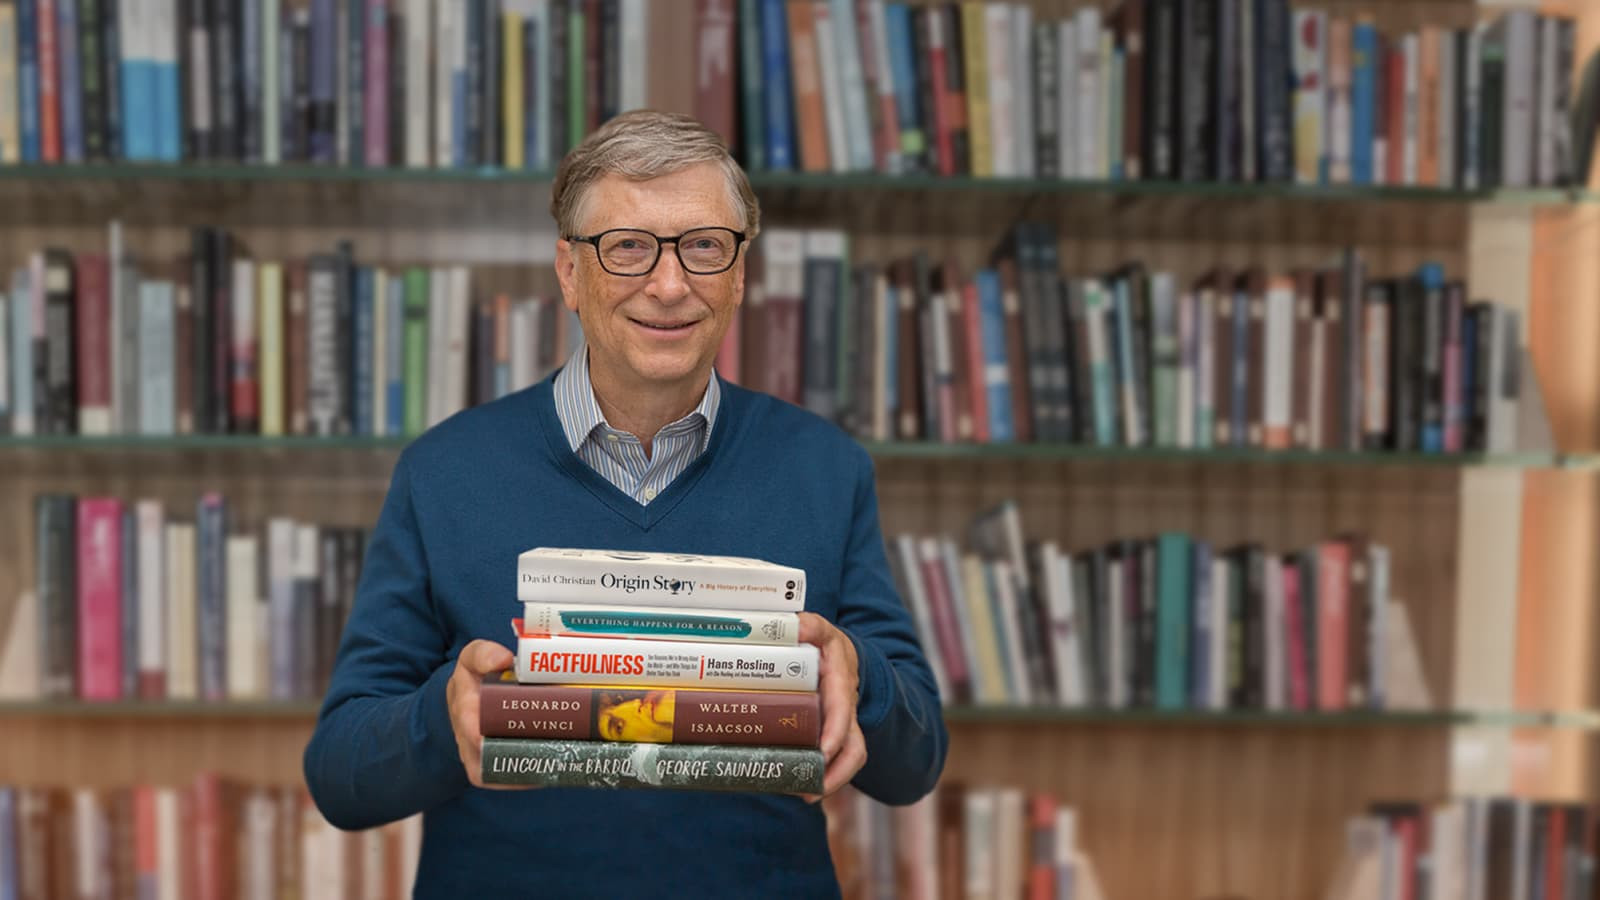 Quy tắc dành 5 giờ đọc sách mà Bill Gates, Jack Ma và Elon Musk áp dụng